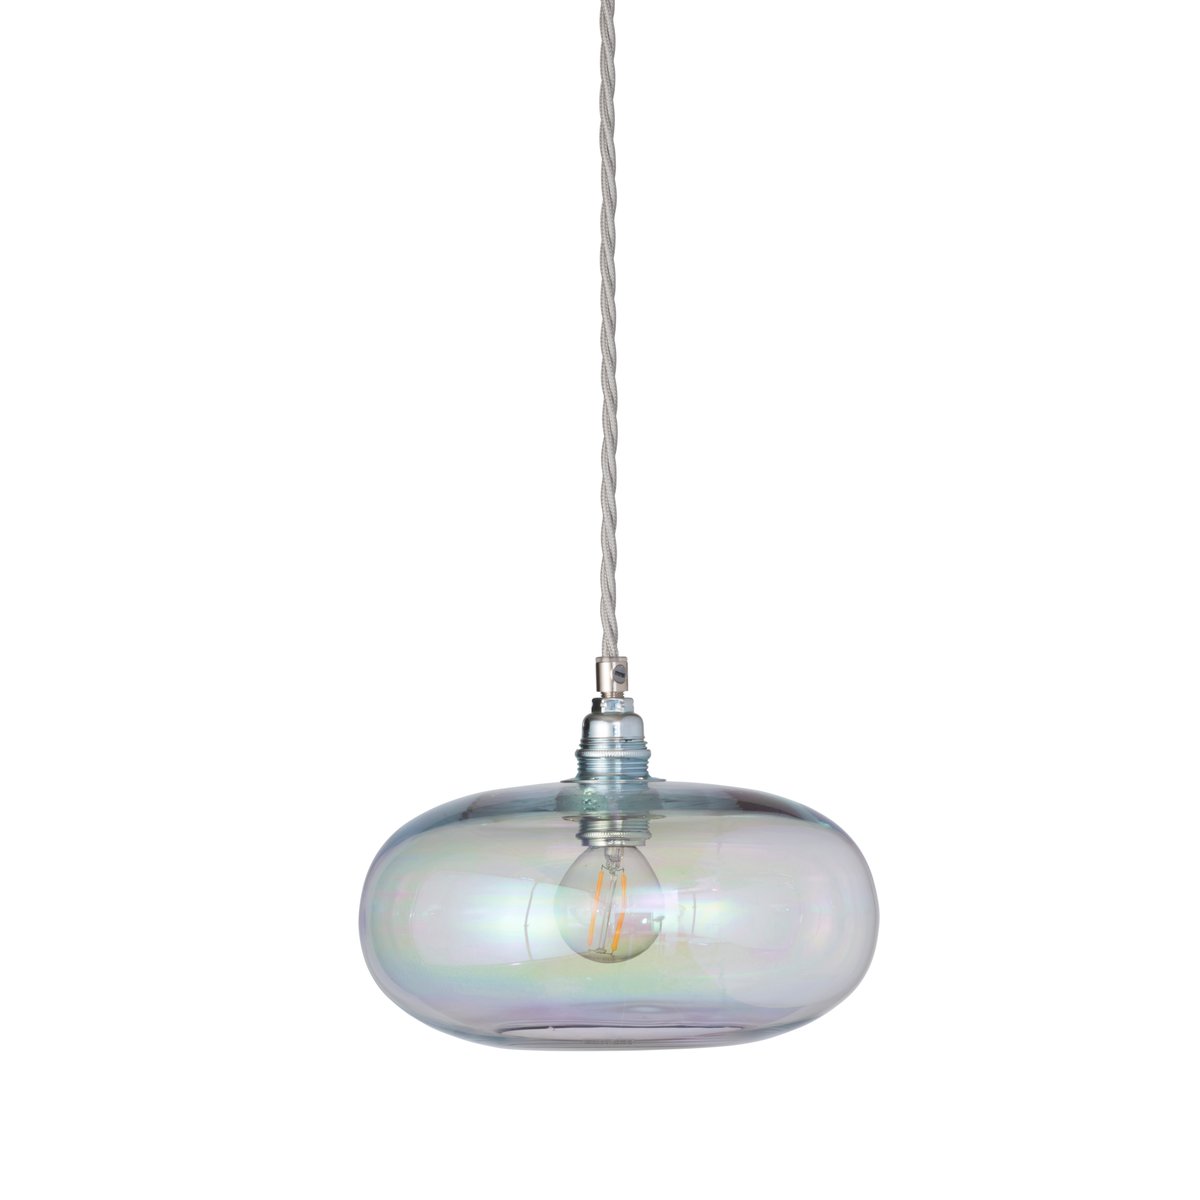 EBB & FLOW Horizon hanglamp Ø 21 cm. Chameleon-silver